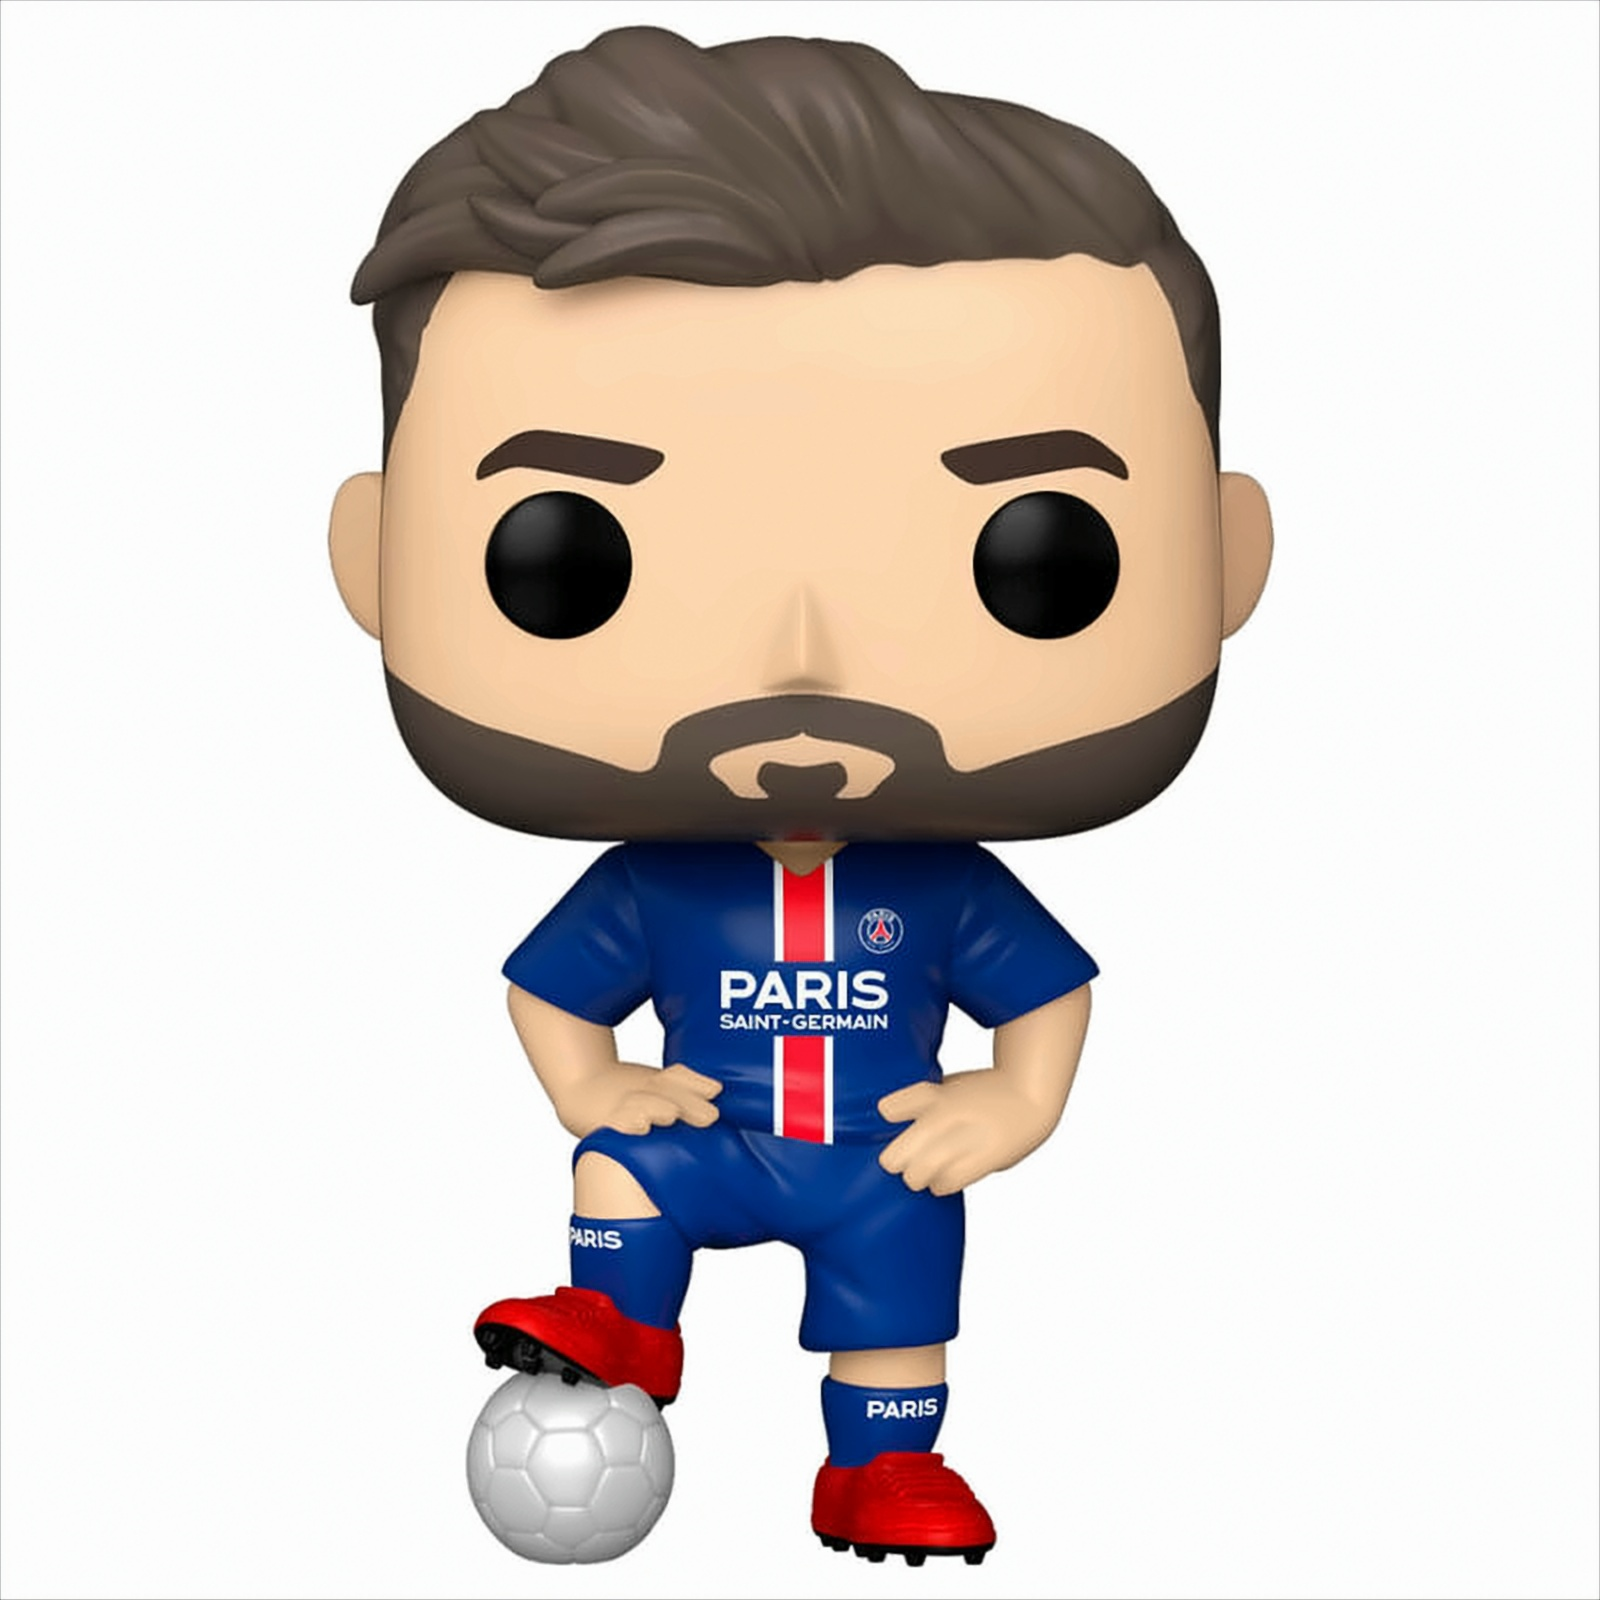 POP - Saint-Germain /Paris Fussball Messi - Lionel